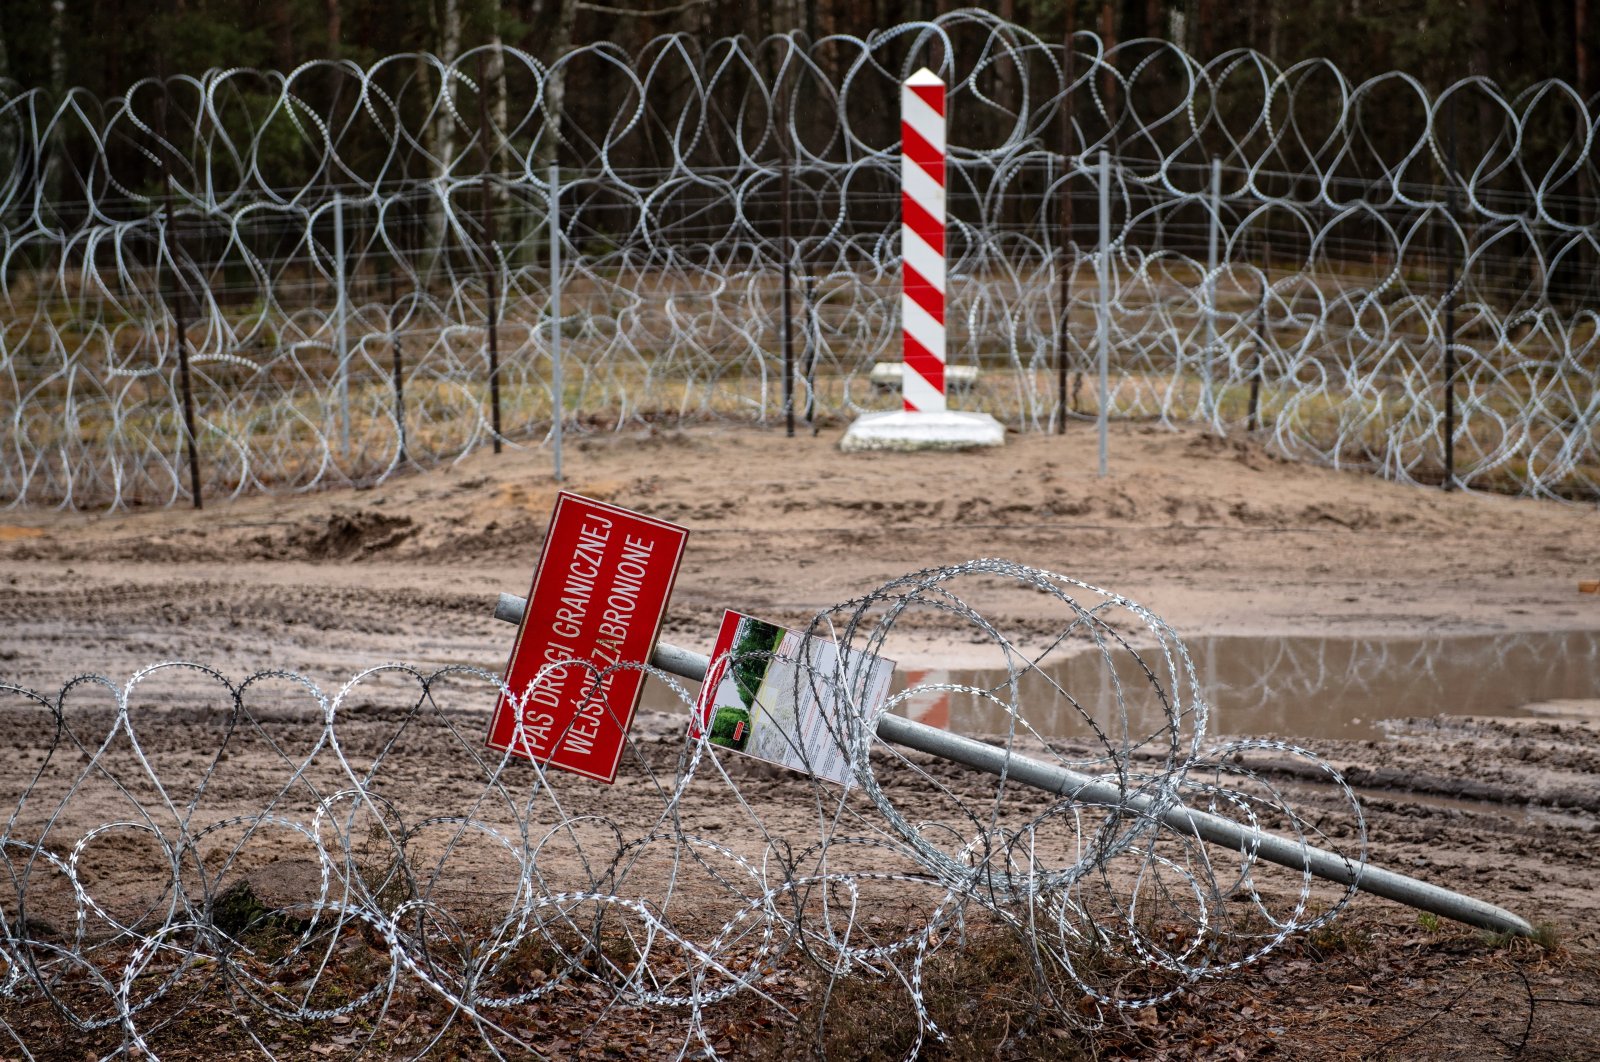 Belarus, Polandia harus mengatasi situasi mengerikan para migran: PBB